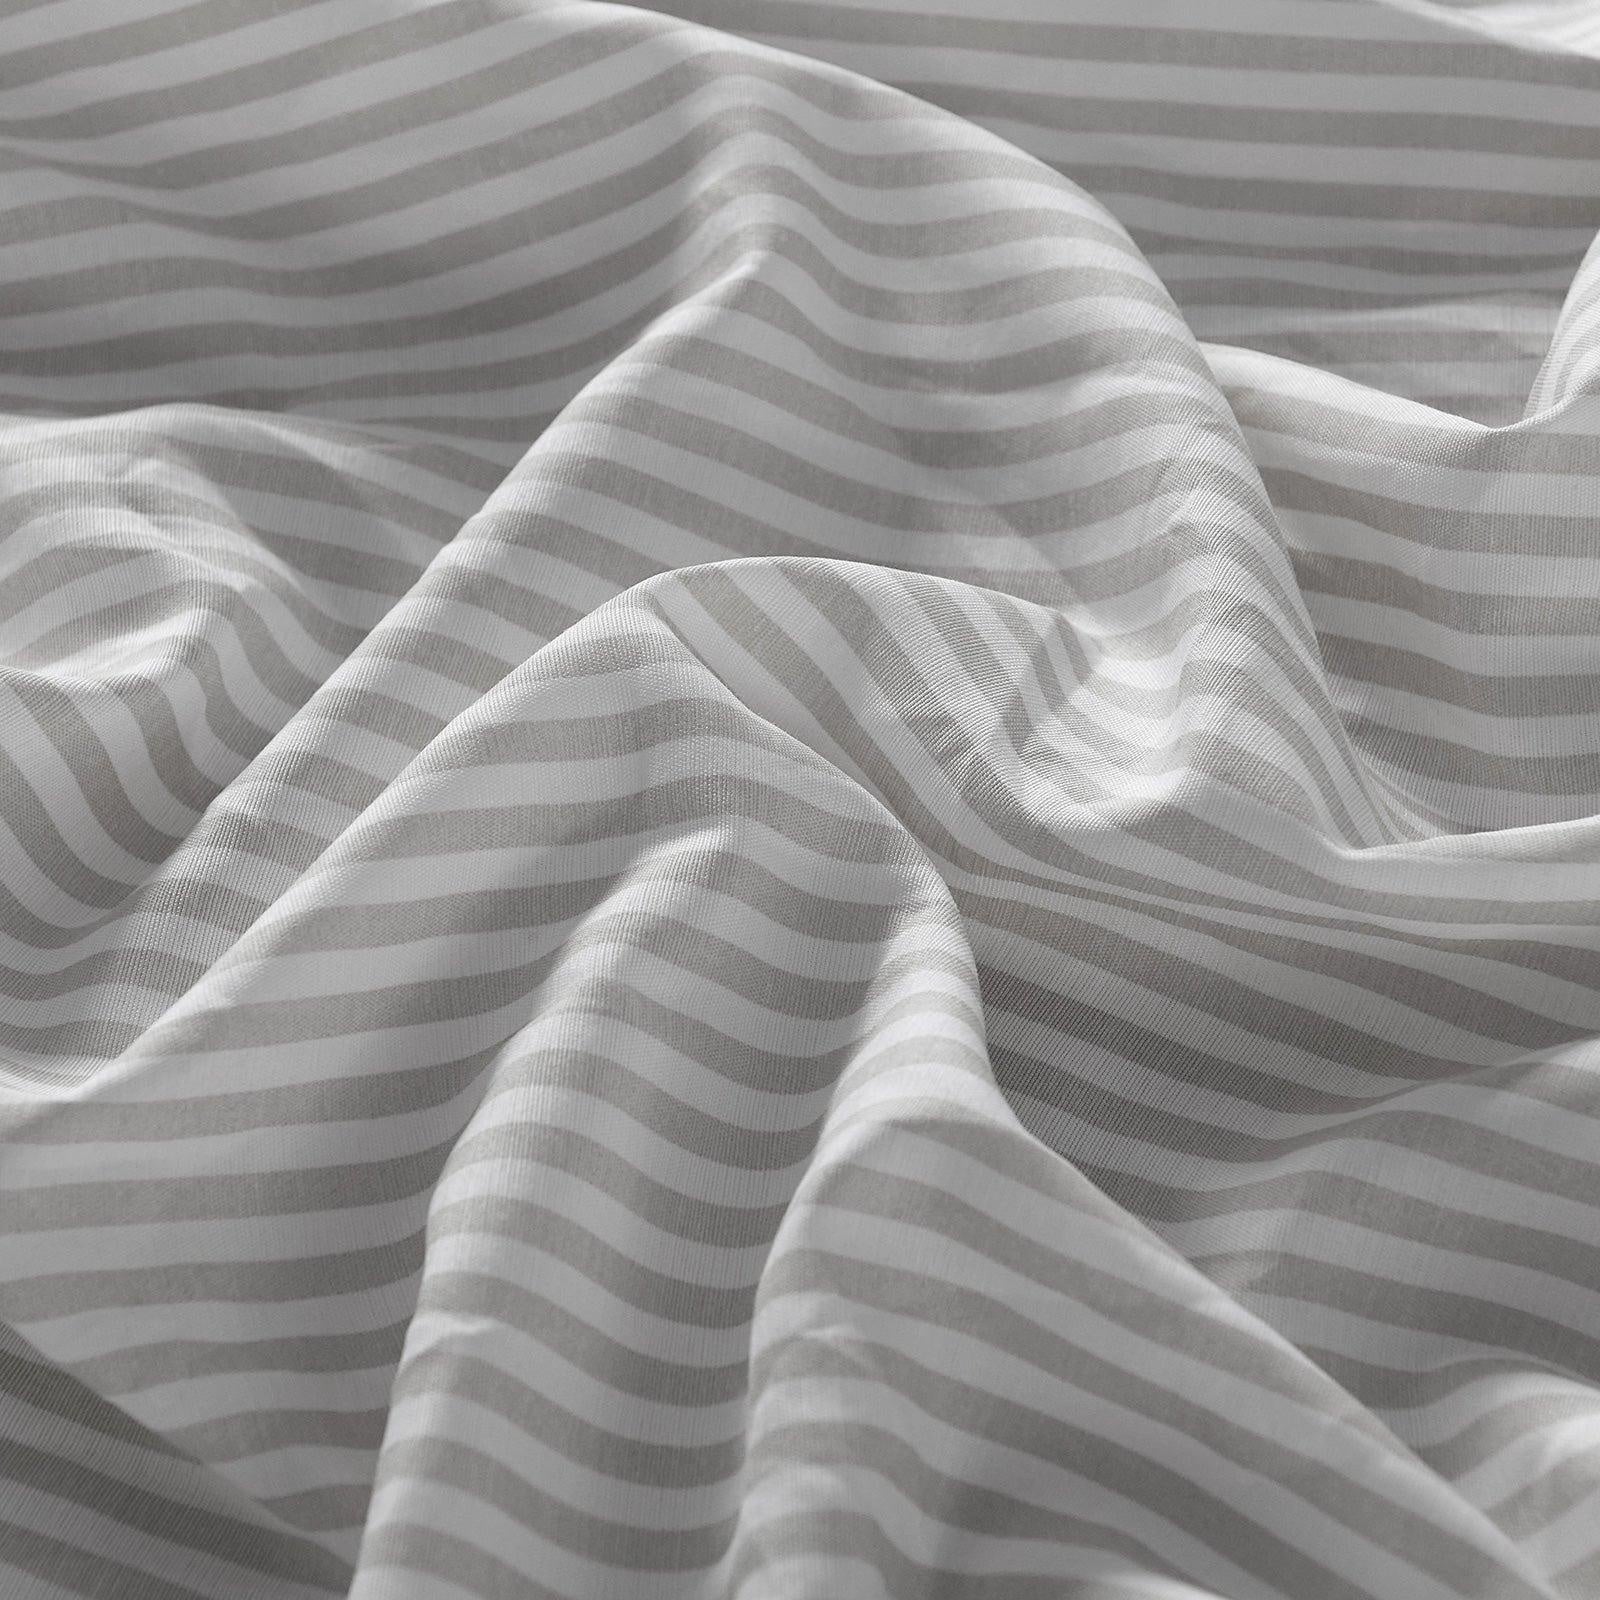 Royal Comfort Stripes Linen Blend Sheet Set Bedding Luxury Breathable Ultra Soft Grey King Deals499